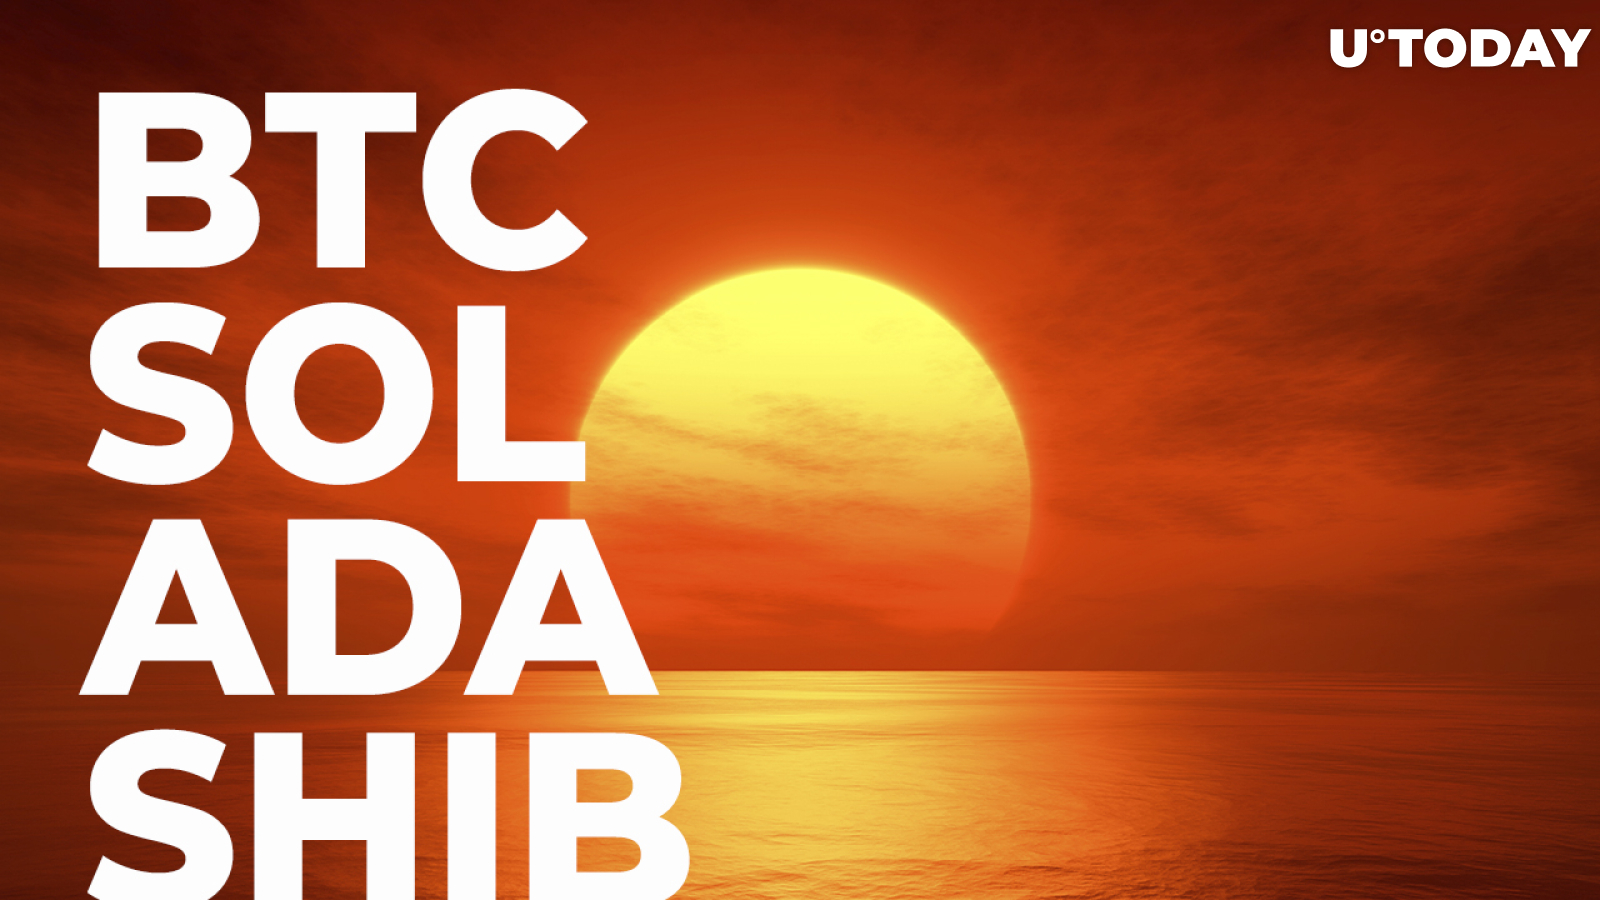 BTC, SOL, ADA, SHIB: Market in Sea of Red